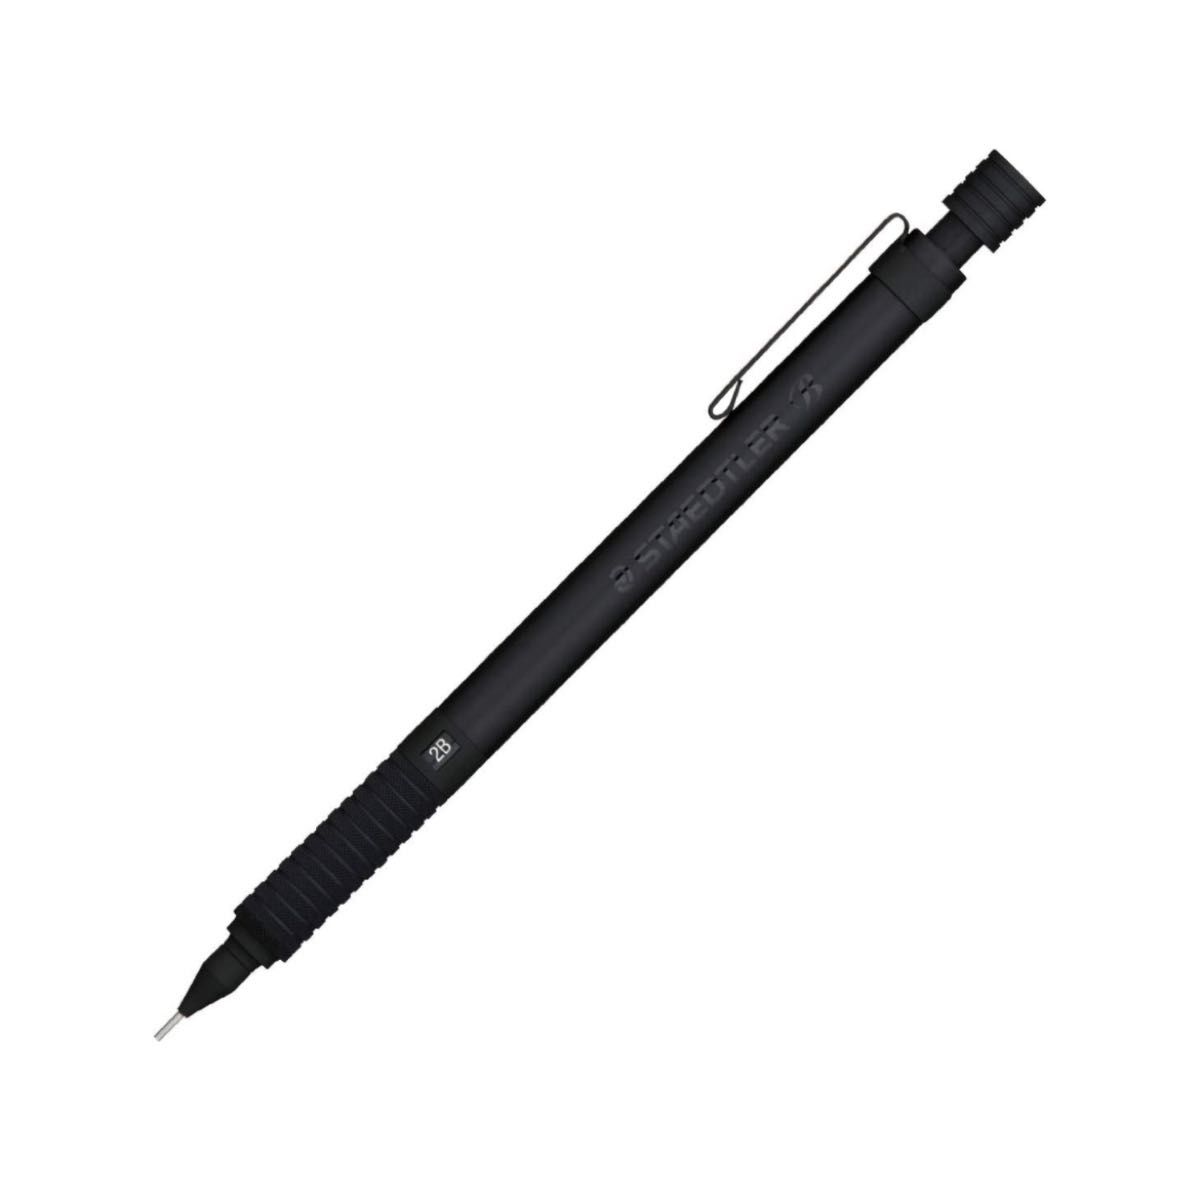 ステッドラー(STAEDTLER) シャーペンペンシル 0.5mm 製図用シャープペン オールブラック 925 35-05B